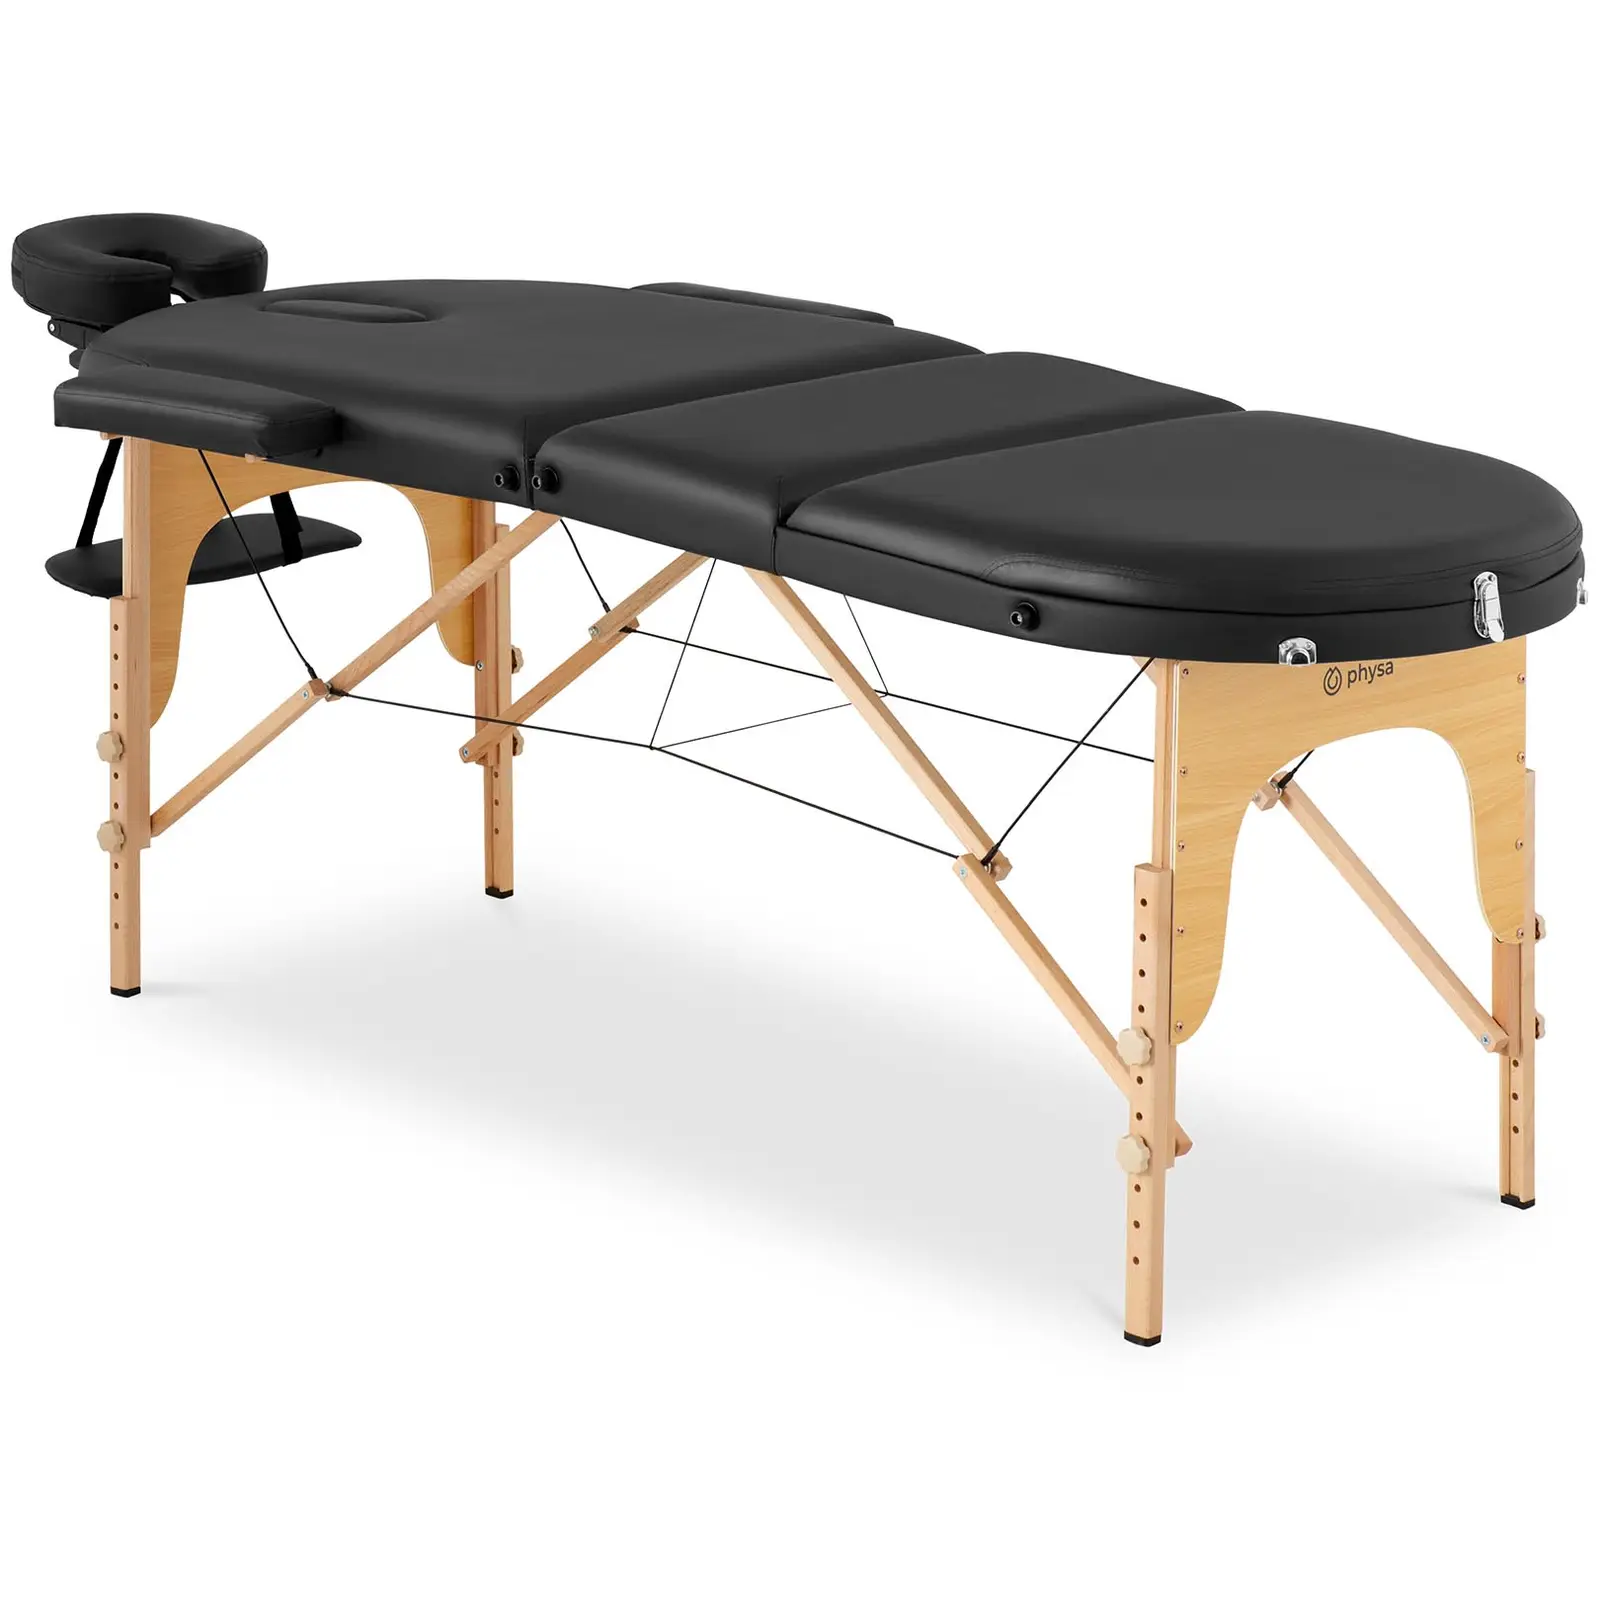 table de massage pliante - 185-211 x 70-88 x 63-85 cm - 227 kg - Black